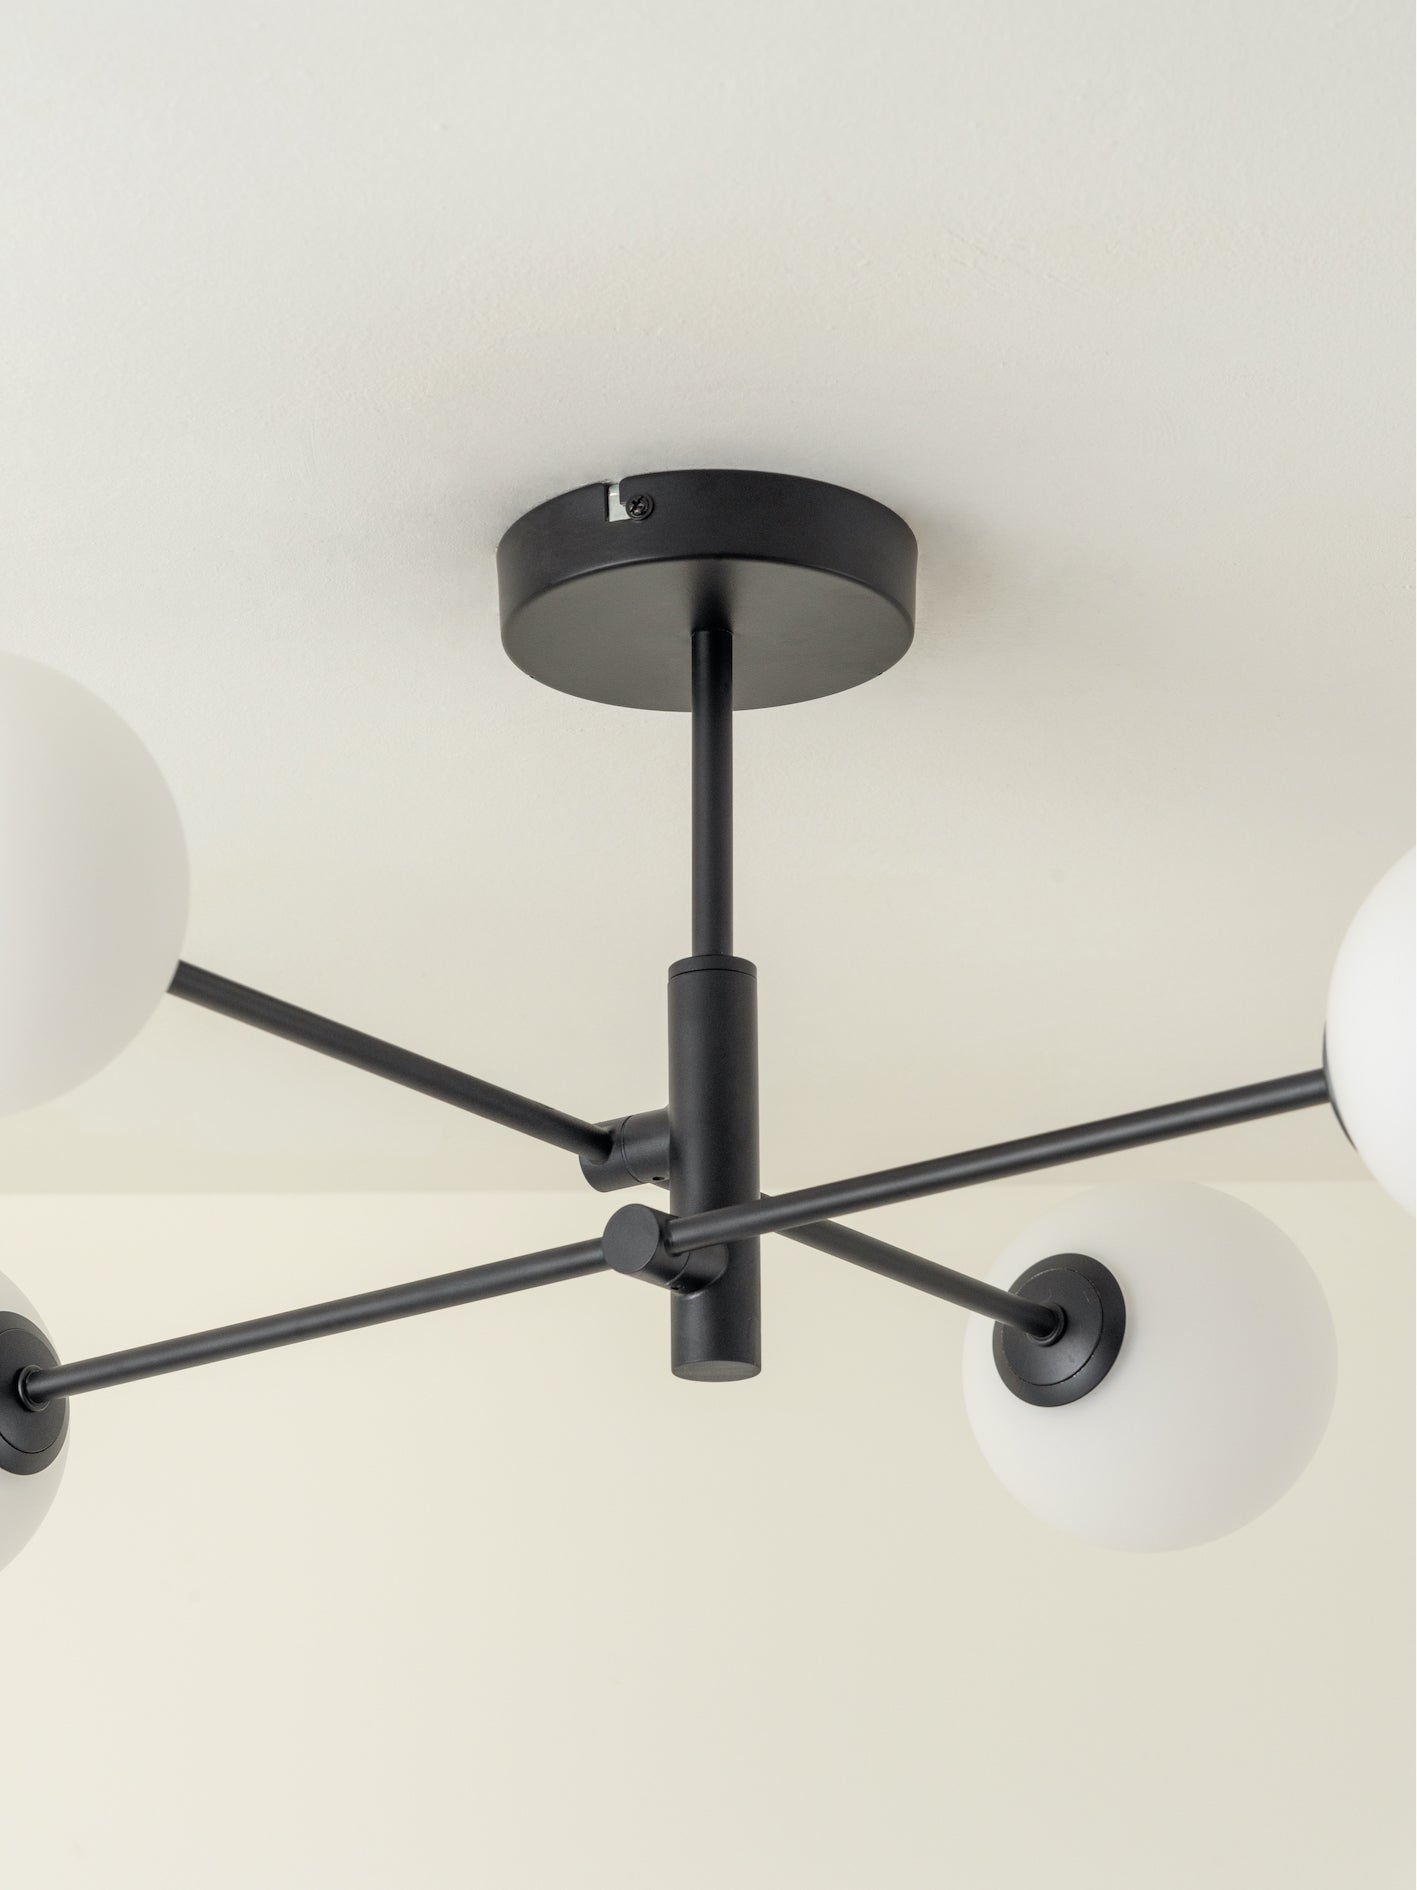 Chelso - 4 light matt black and opal flush | Ceiling Light | Lights & Lamps Inc | Modern Affordable Designer Lighting | USA